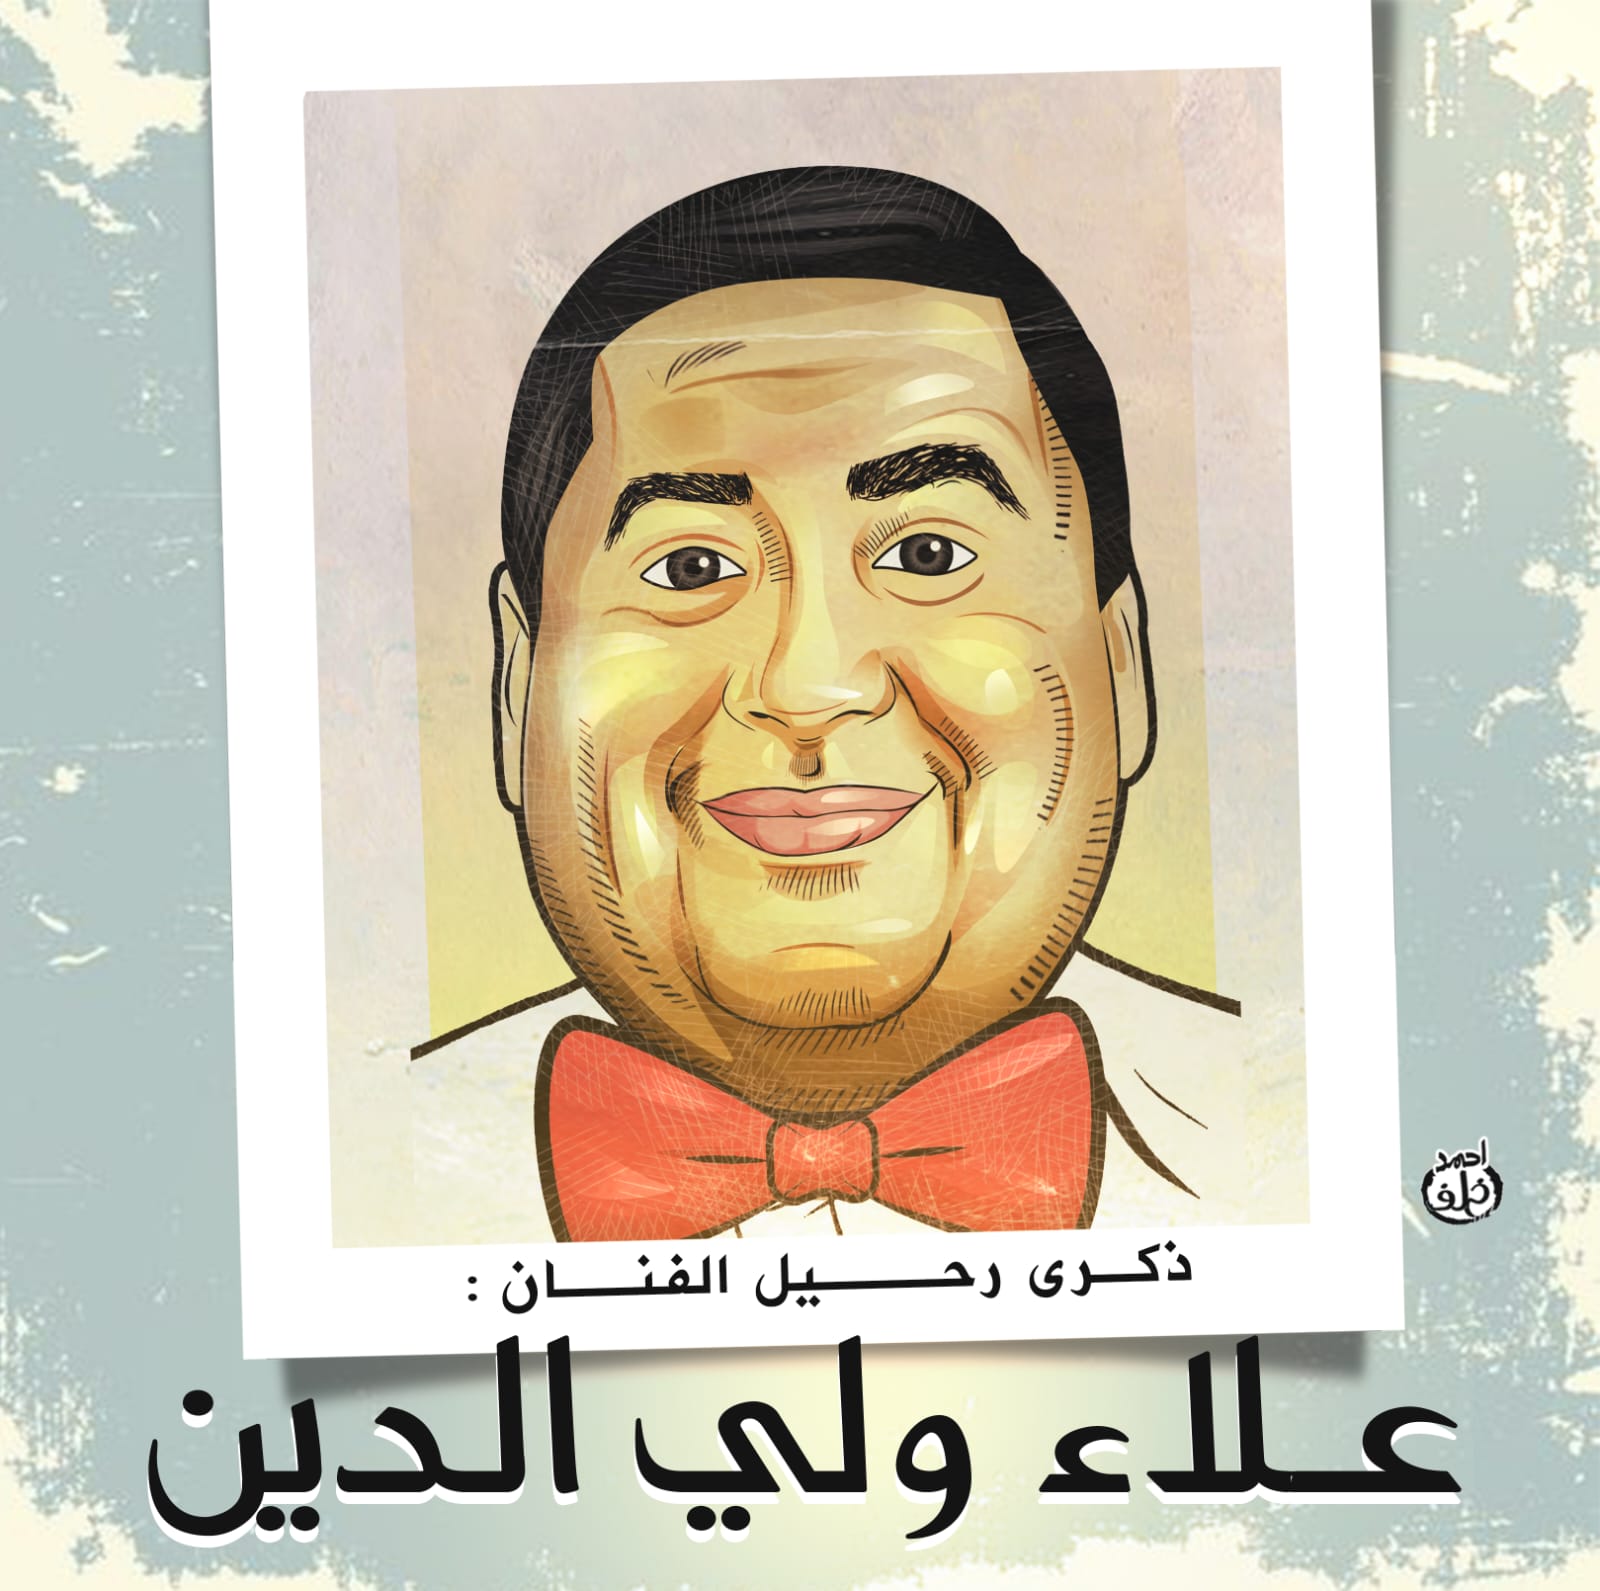 ذكرى رحيل علاء ولي الدين في كاريكاتير اليوم السابع